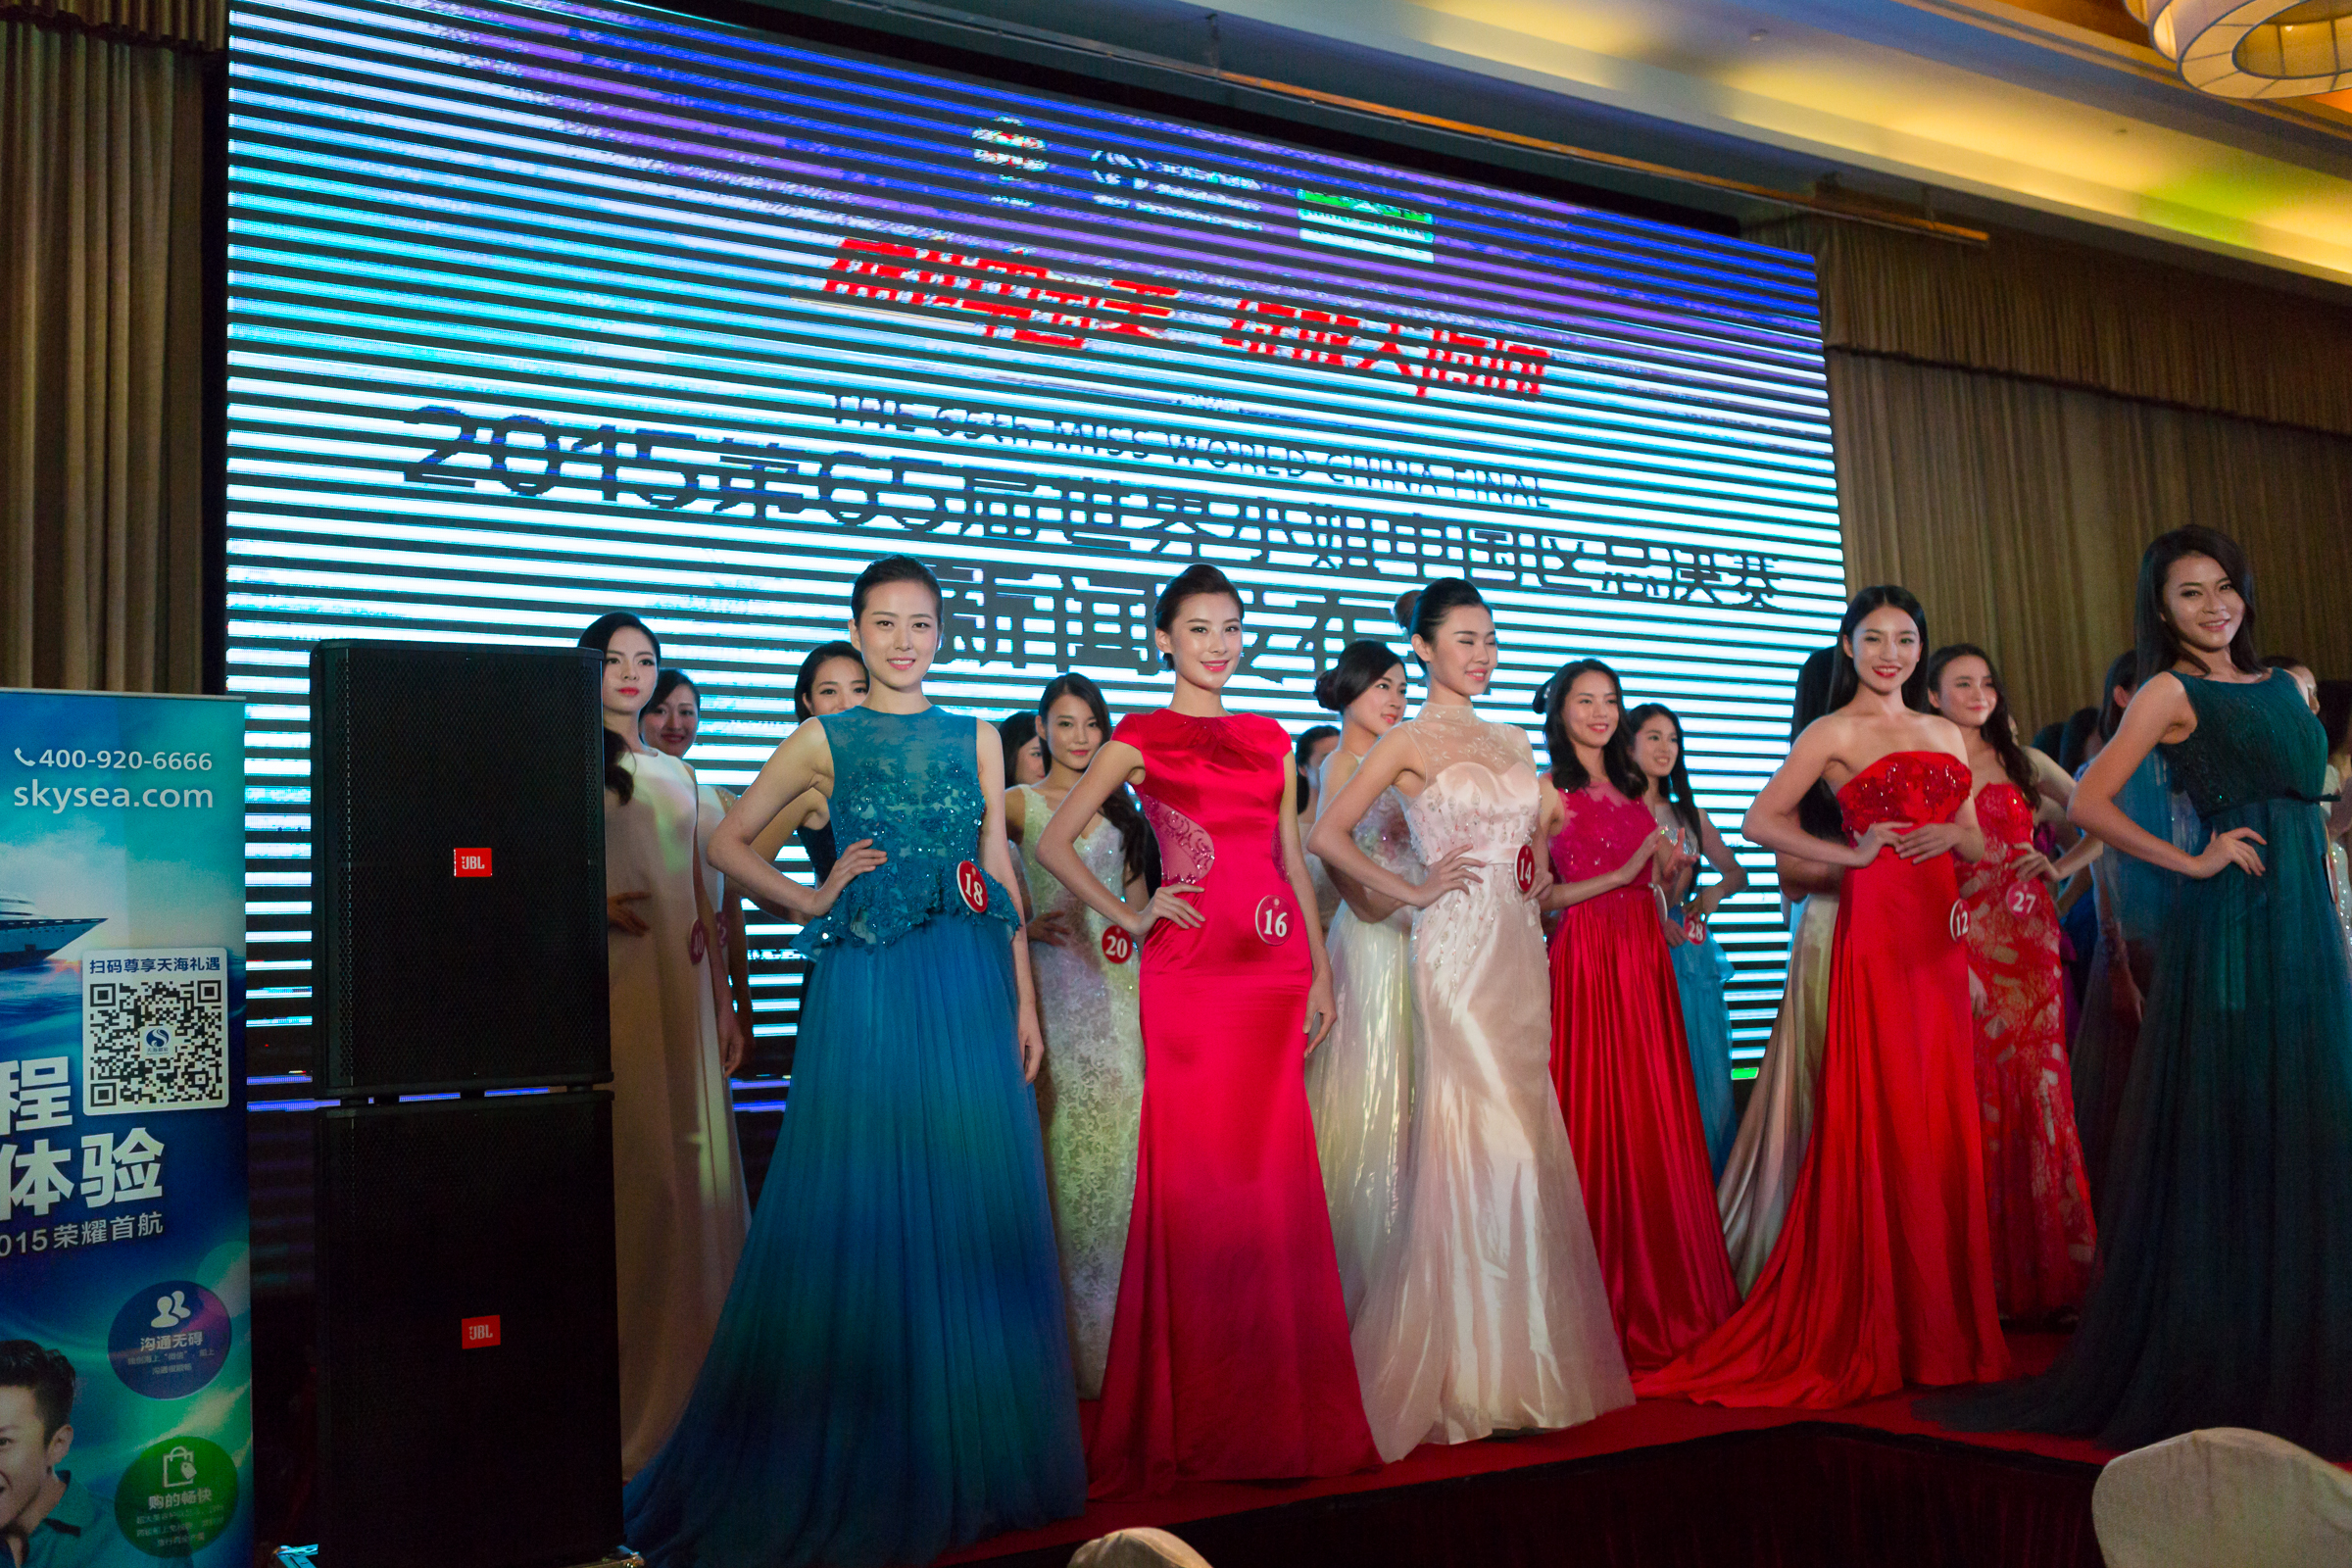 2015 | Miss World China | Final 12/11 - Page 2 005IJvz6gw1exr1ubxwglj31uo18gqv7